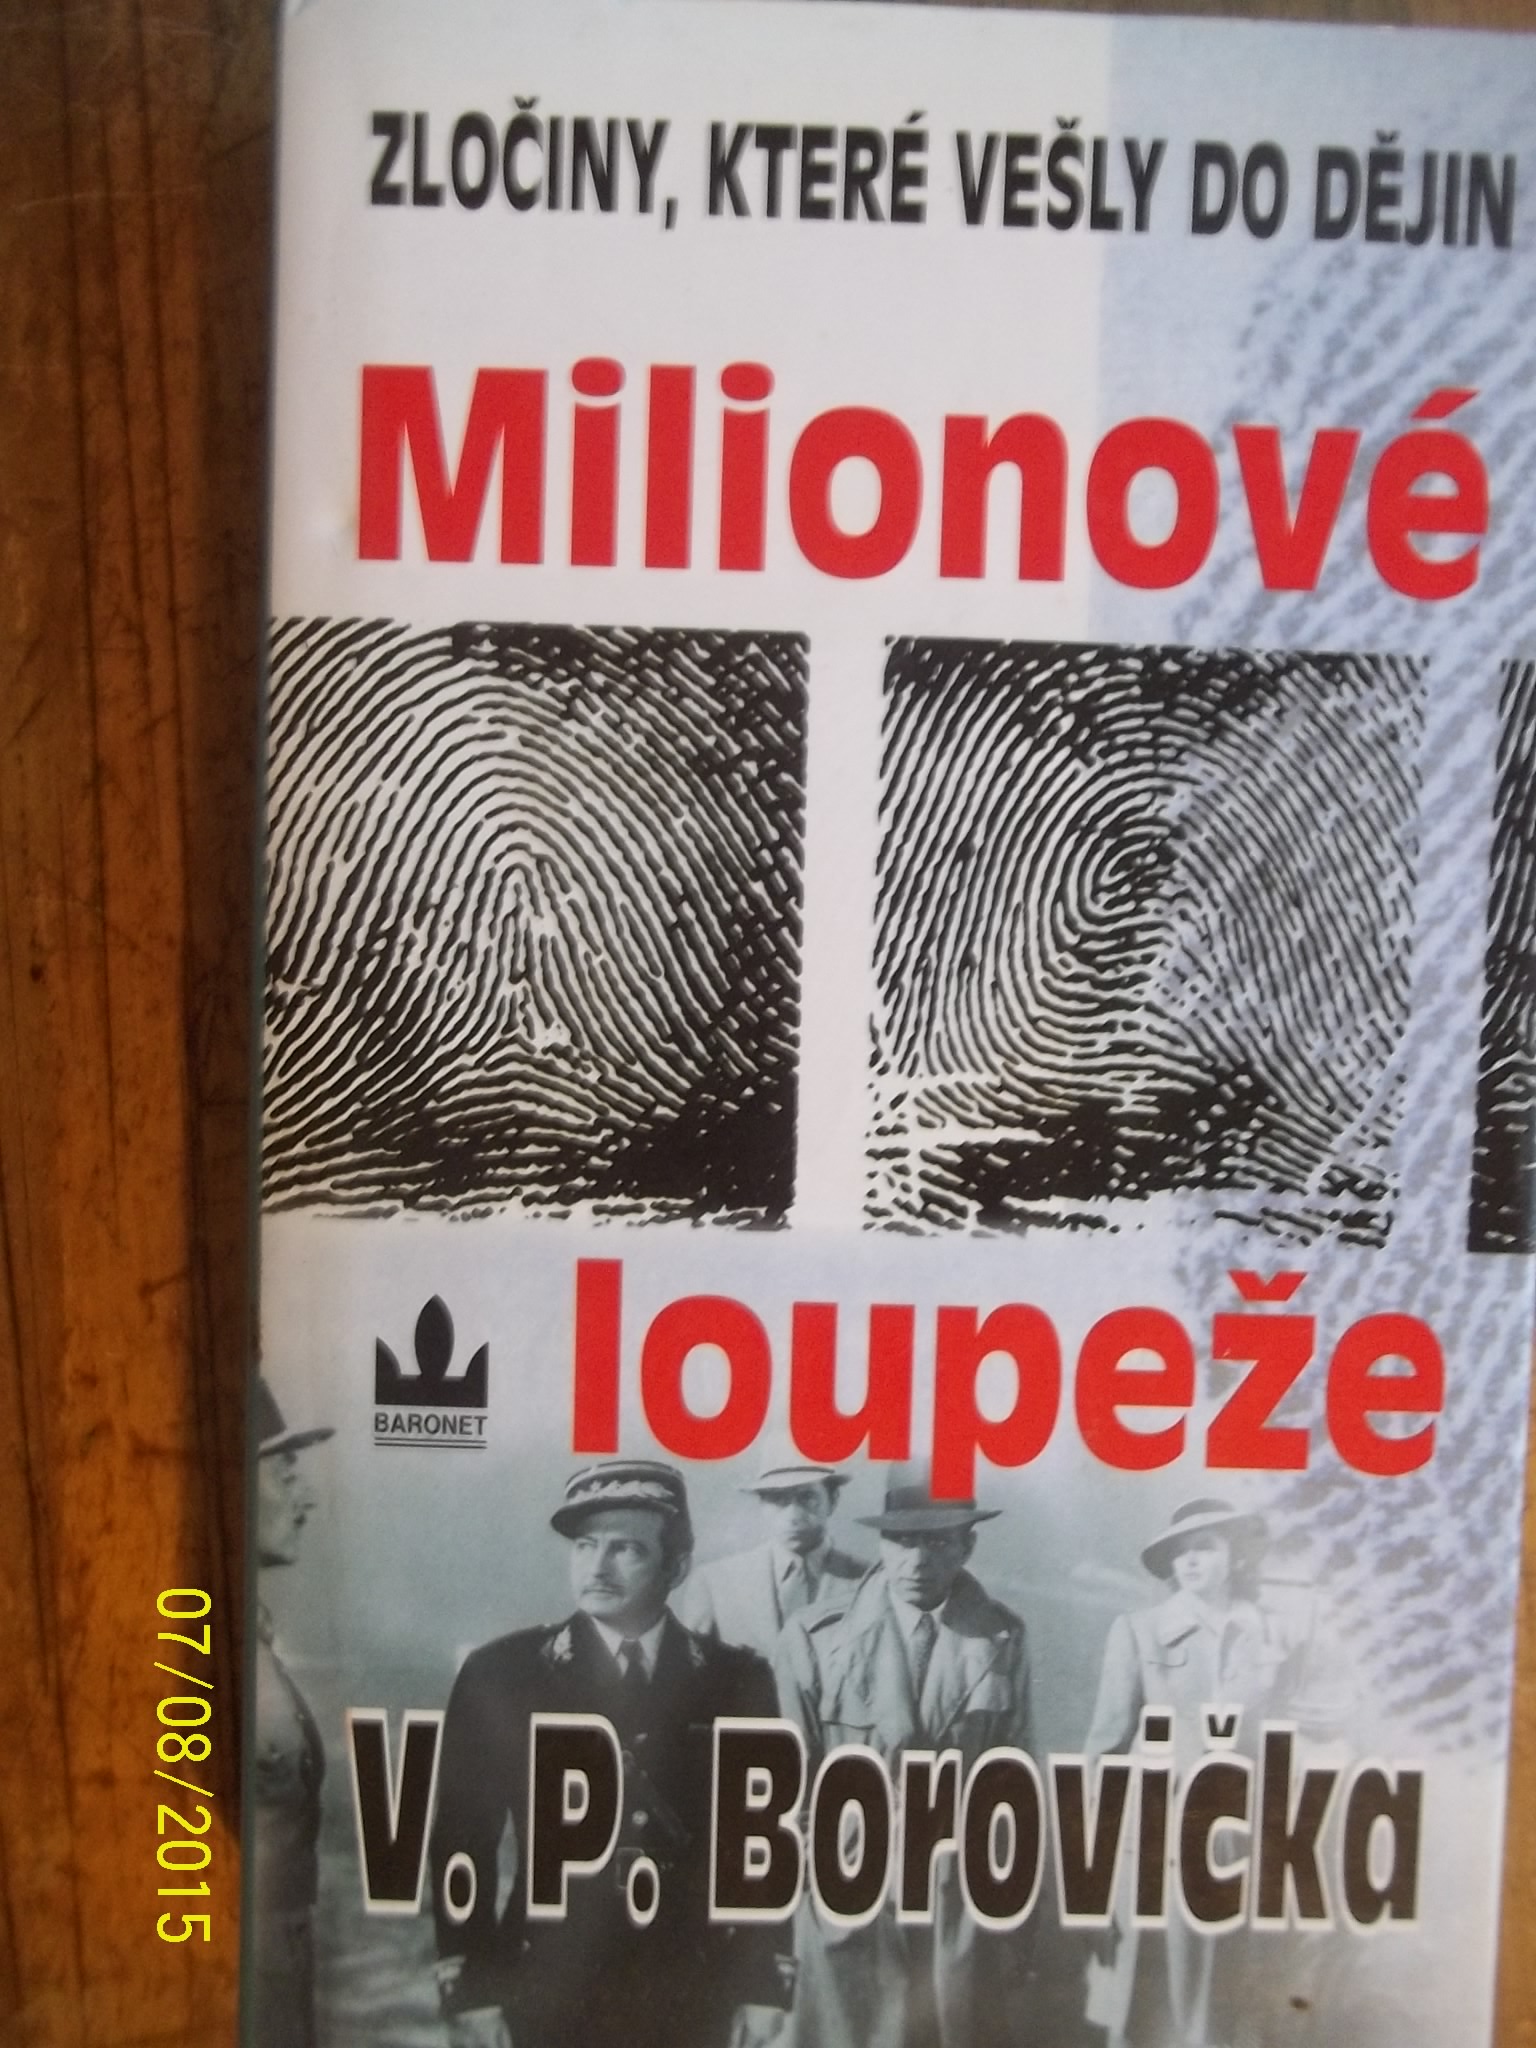 zobrazit detail knihy Borovika, V. P: Milionov loupee